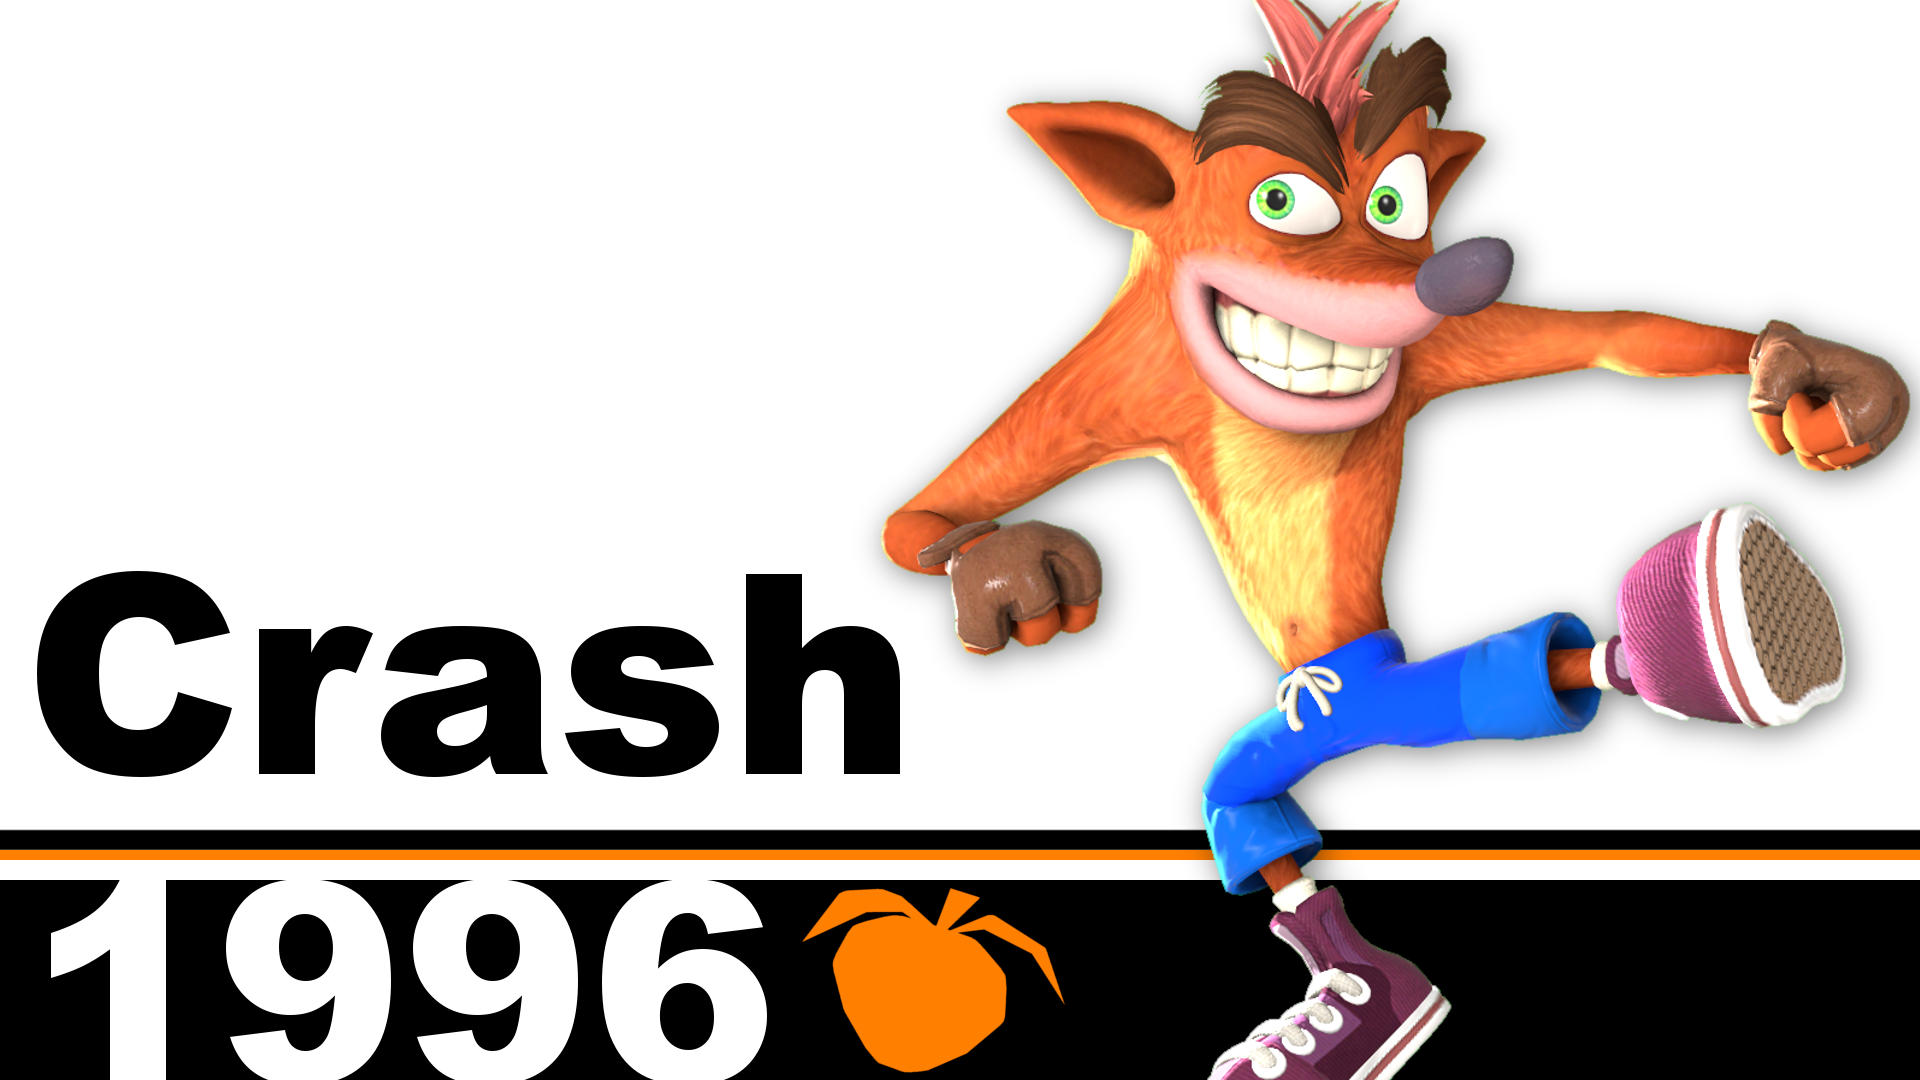 Crash Bandicoot - Super Smash Bros. Ultimate by Sowells on DeviantArt